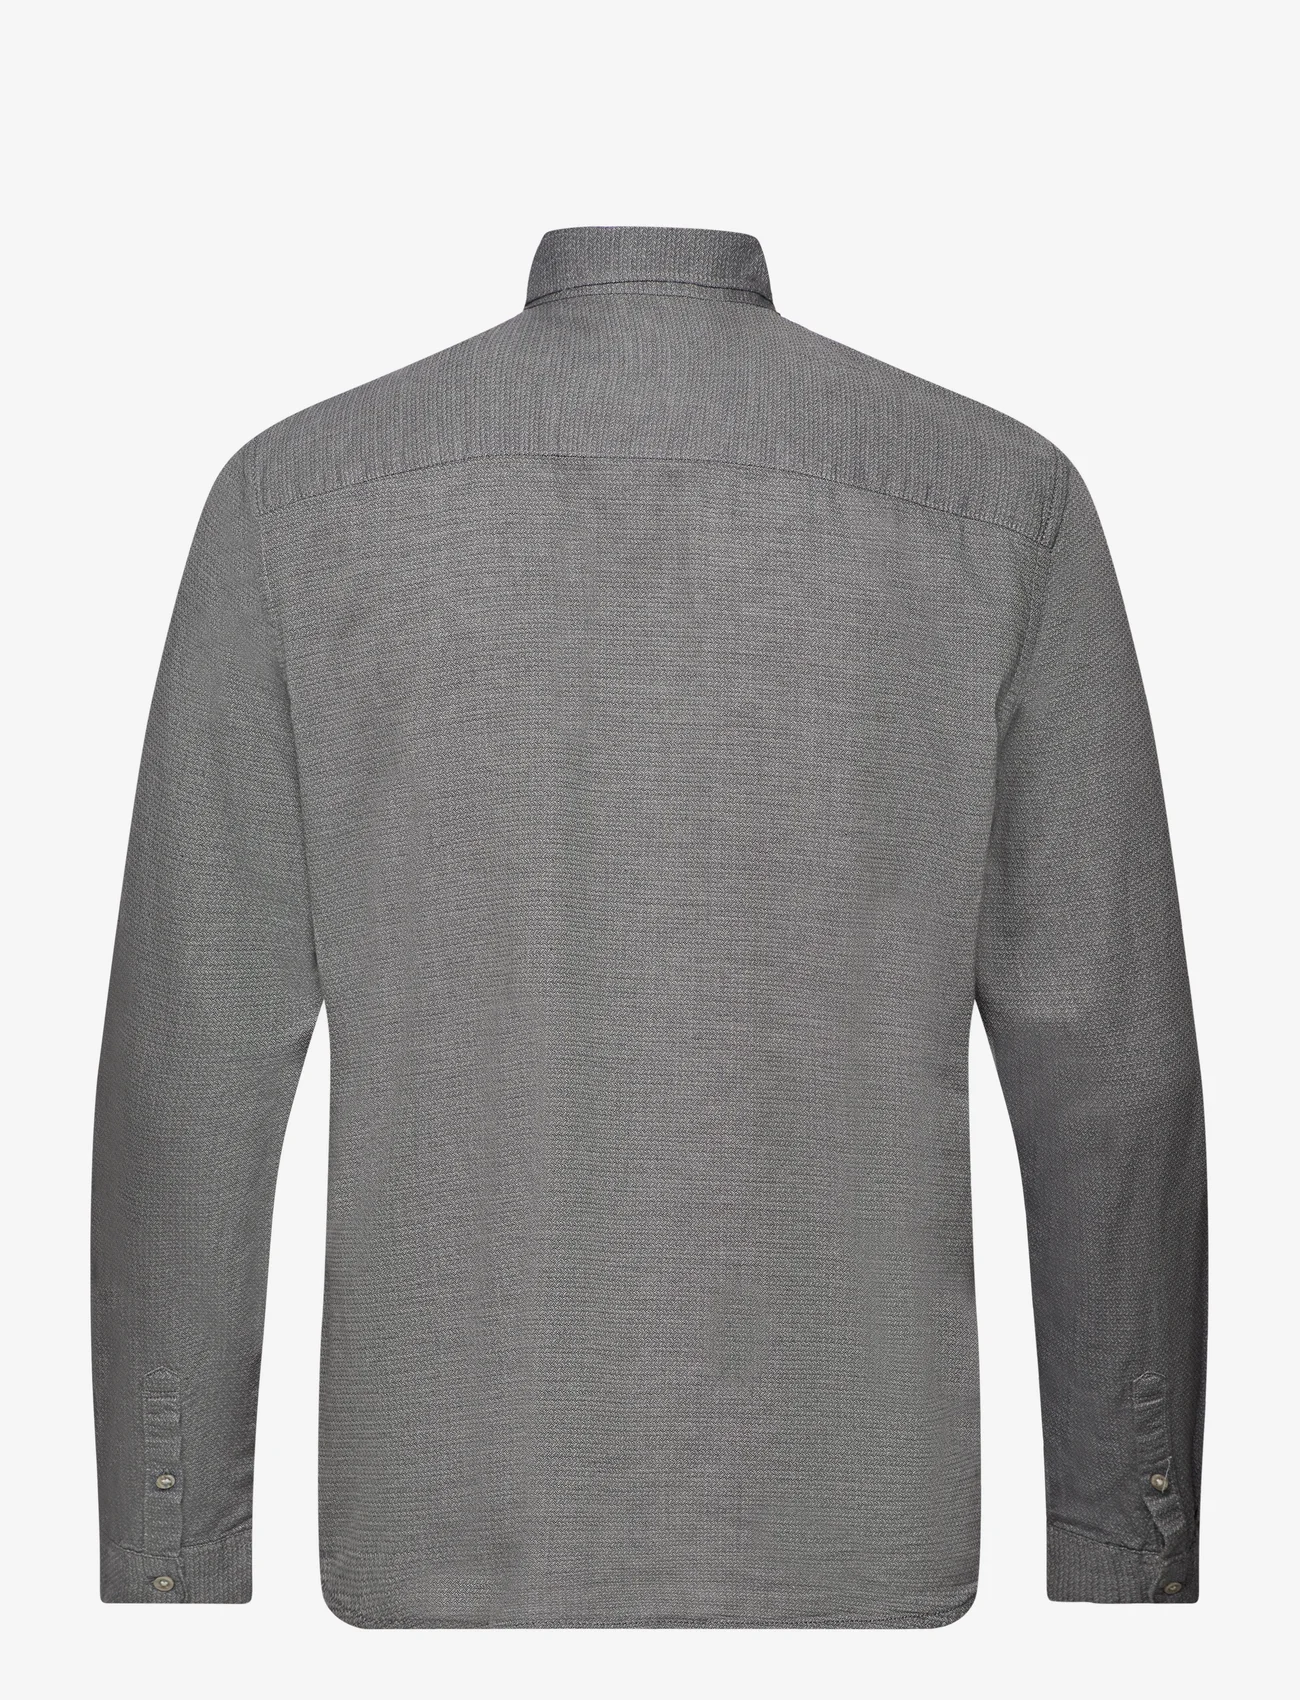 Tom Tailor - structured shirt - die niedrigsten preise - navy off white structure - 1